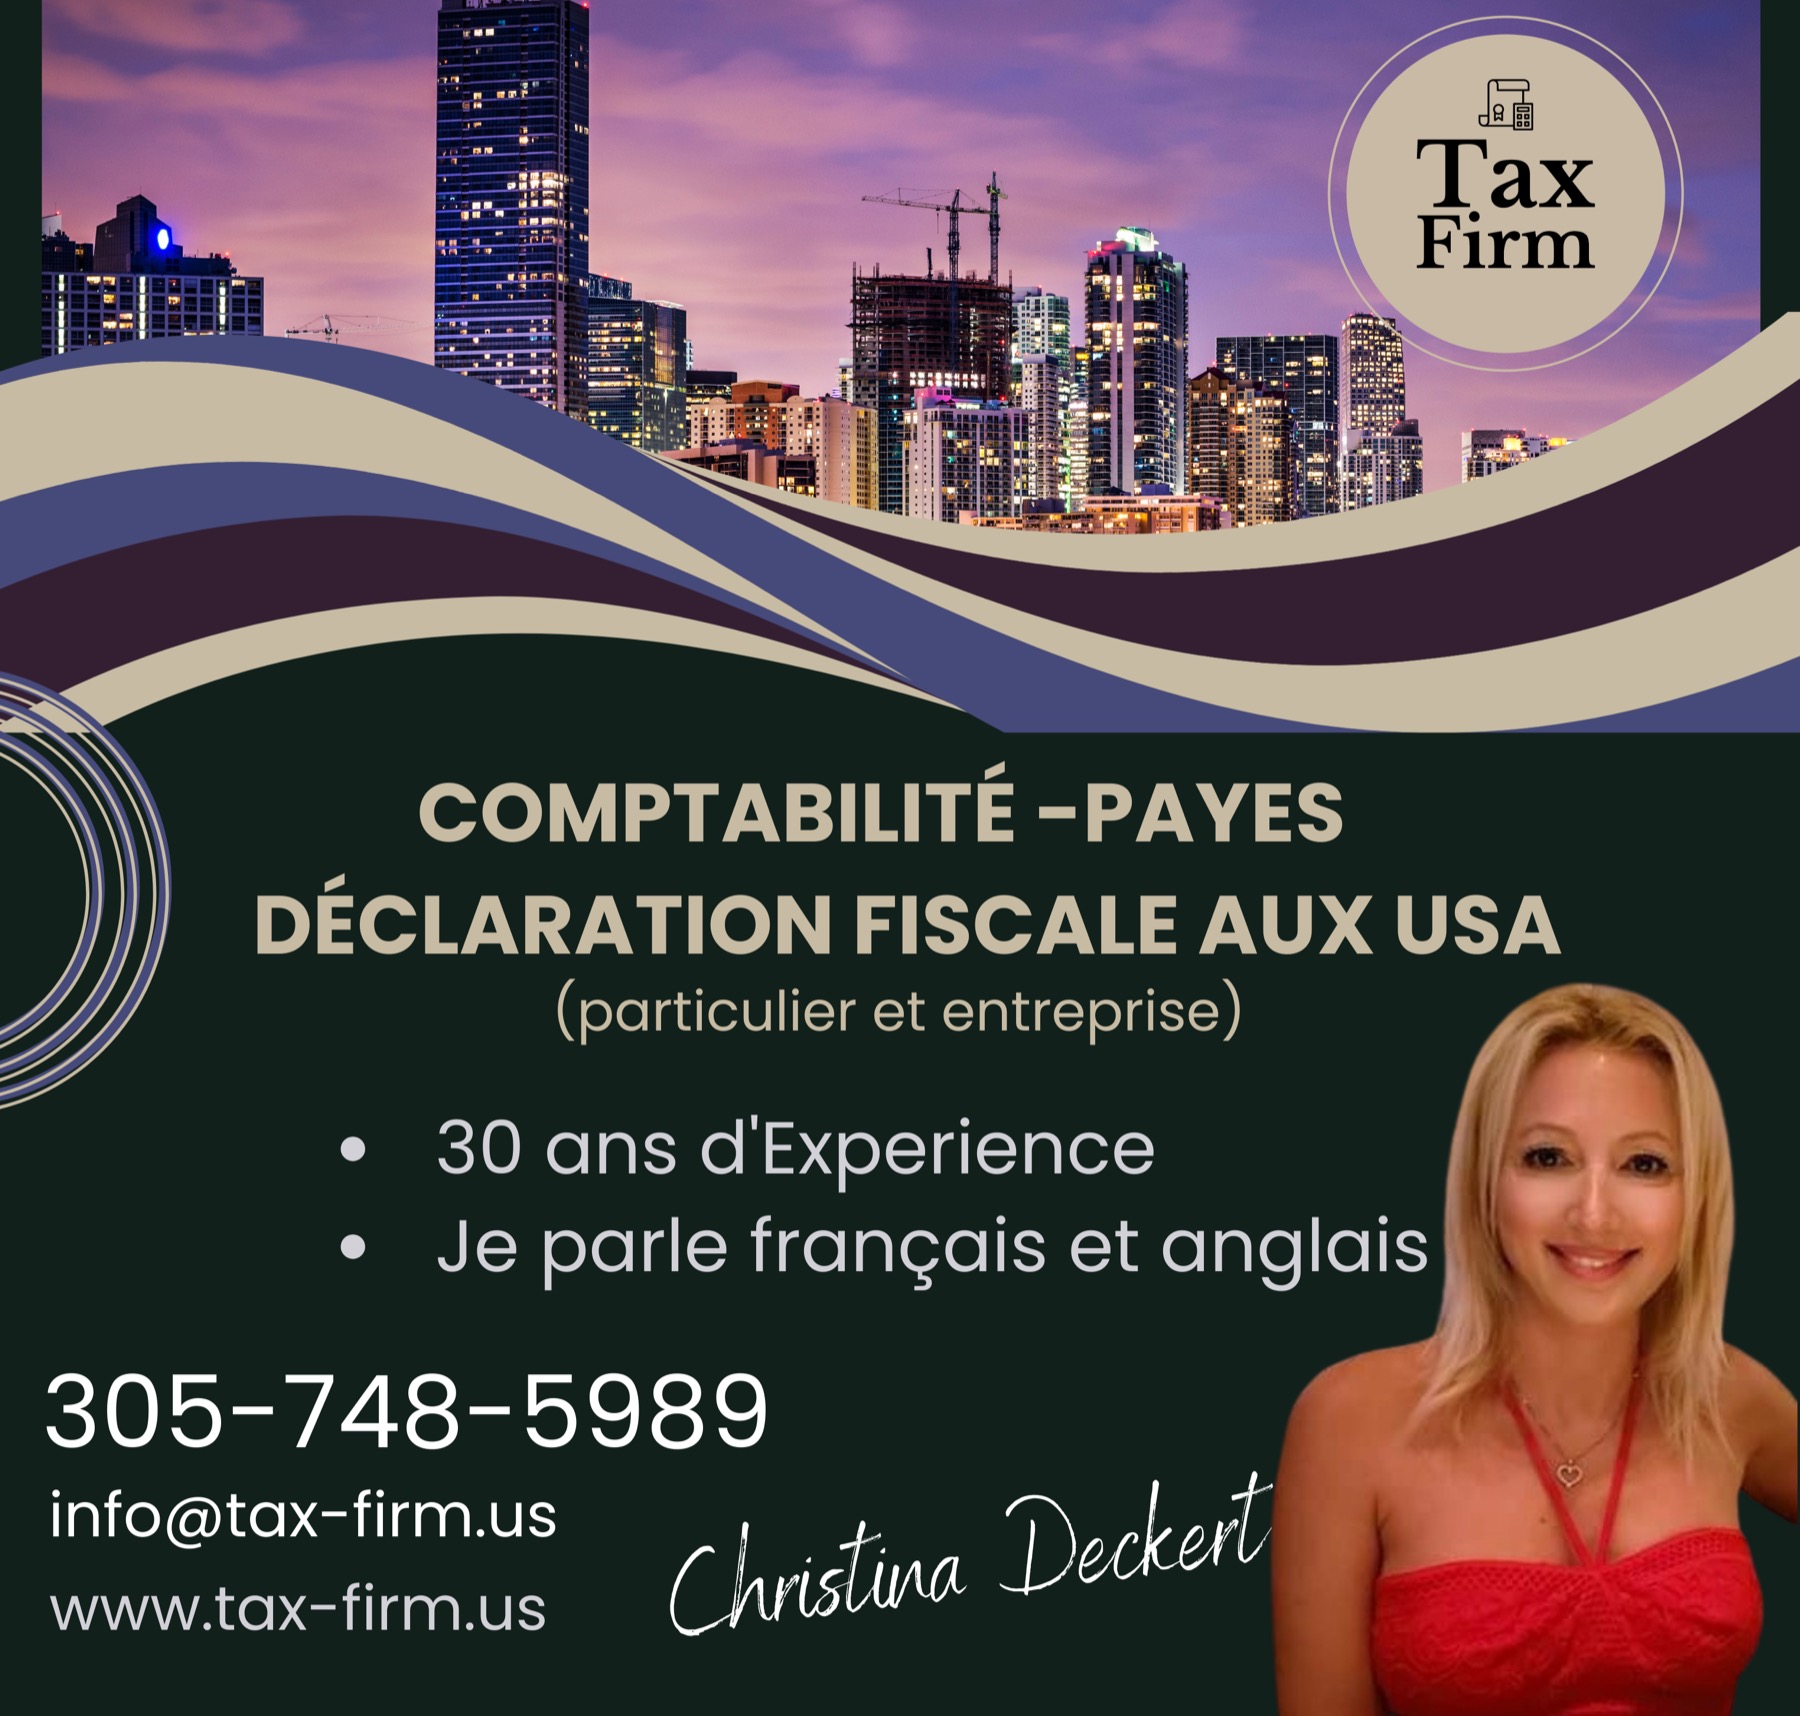 Christina Deckert - Tax Firm USA